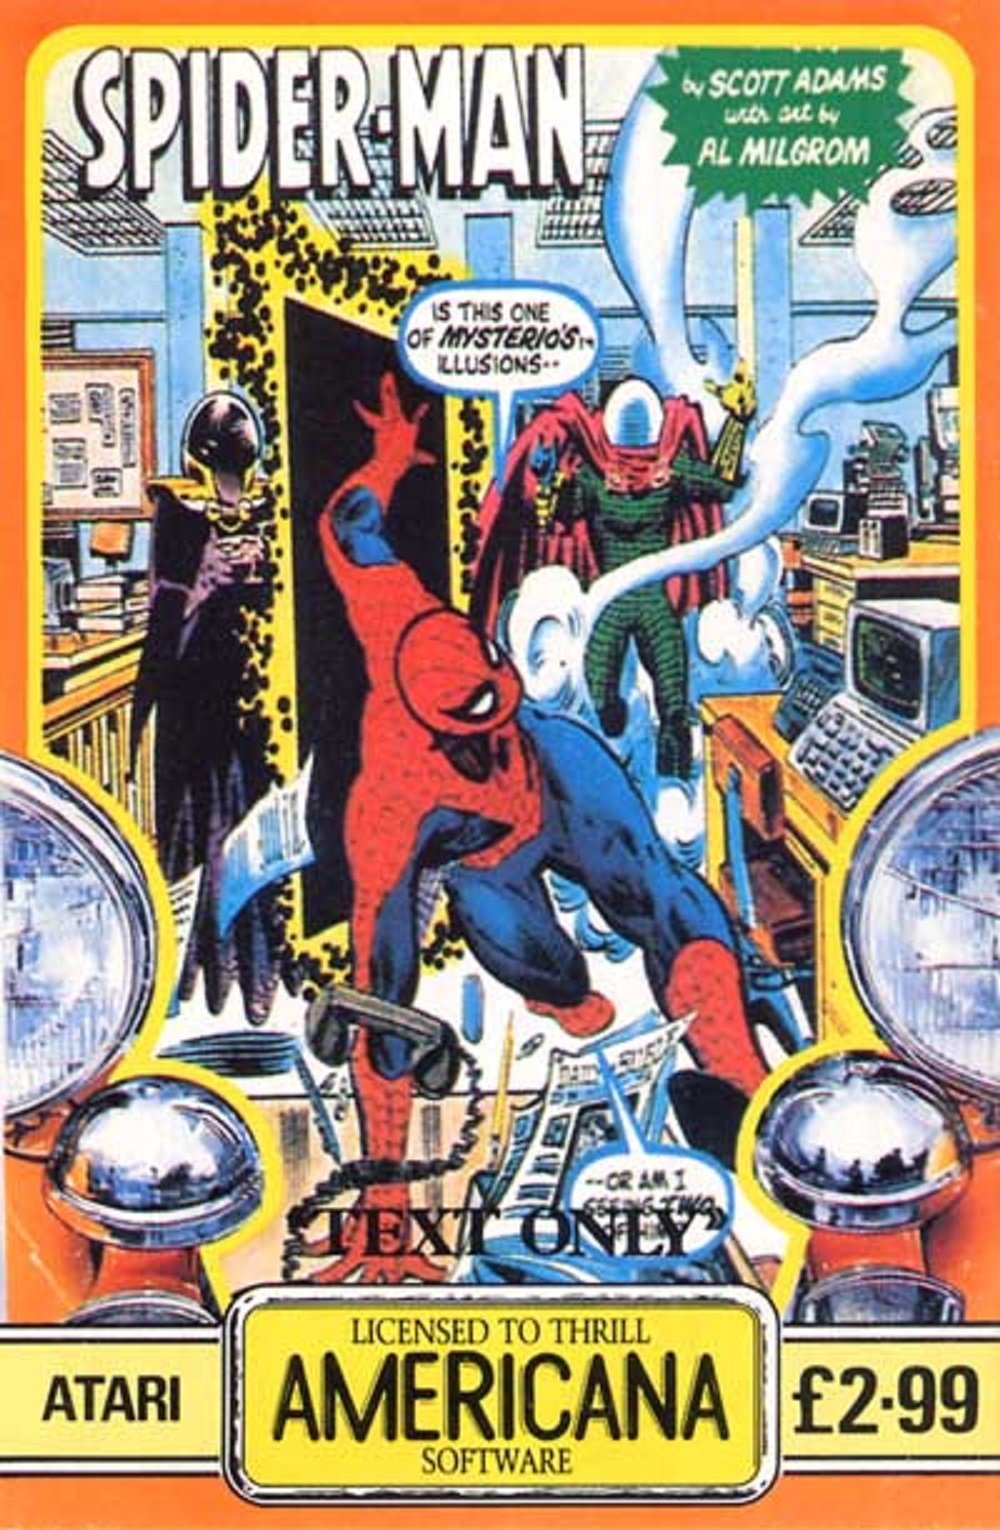 Image of Questprobe featuring Spider-Man